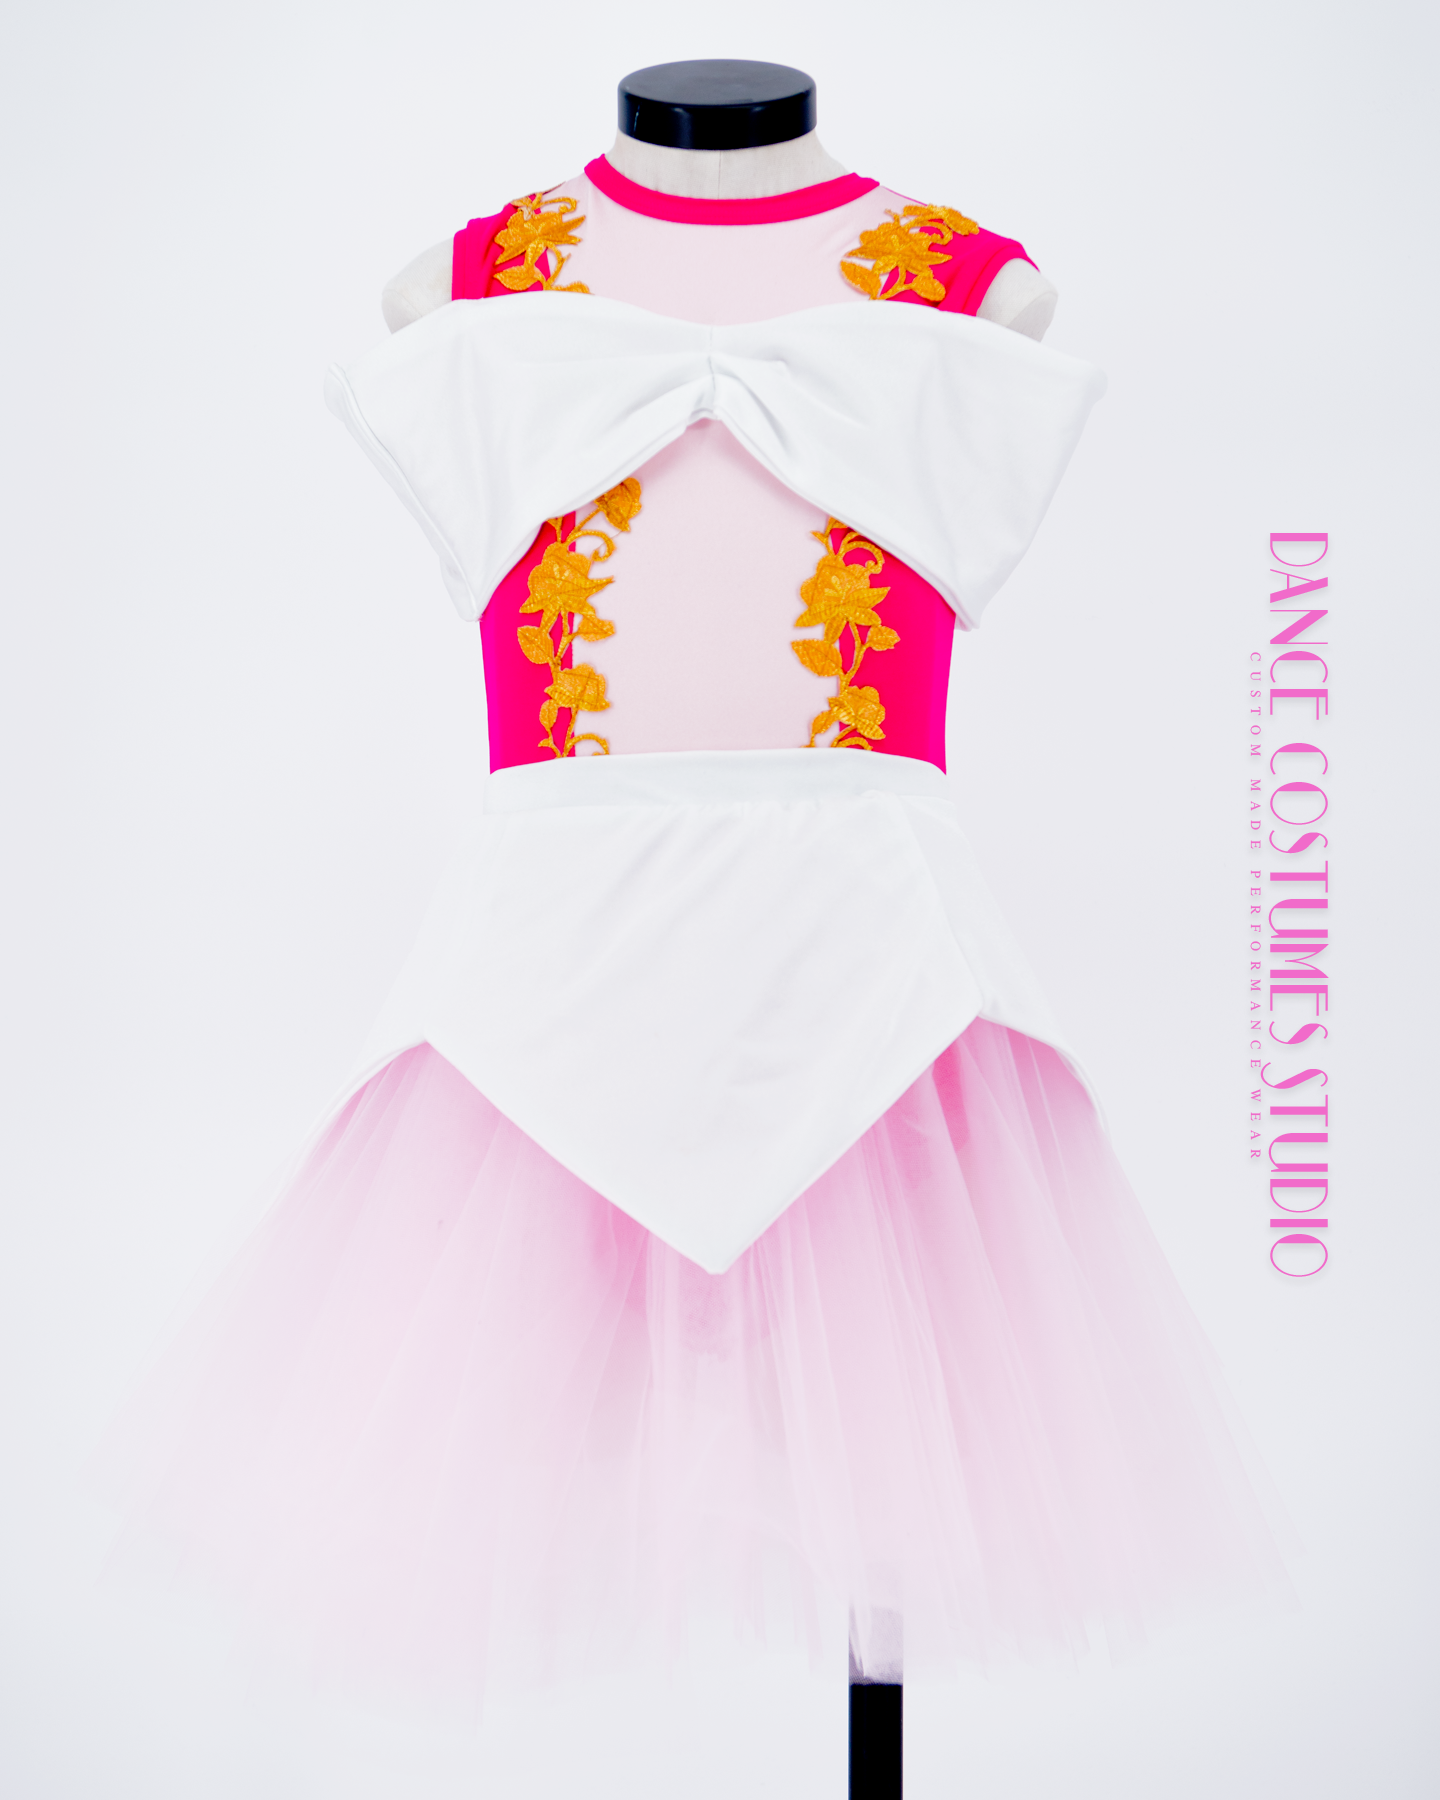 Princesse Aurora Theme Dance Costume